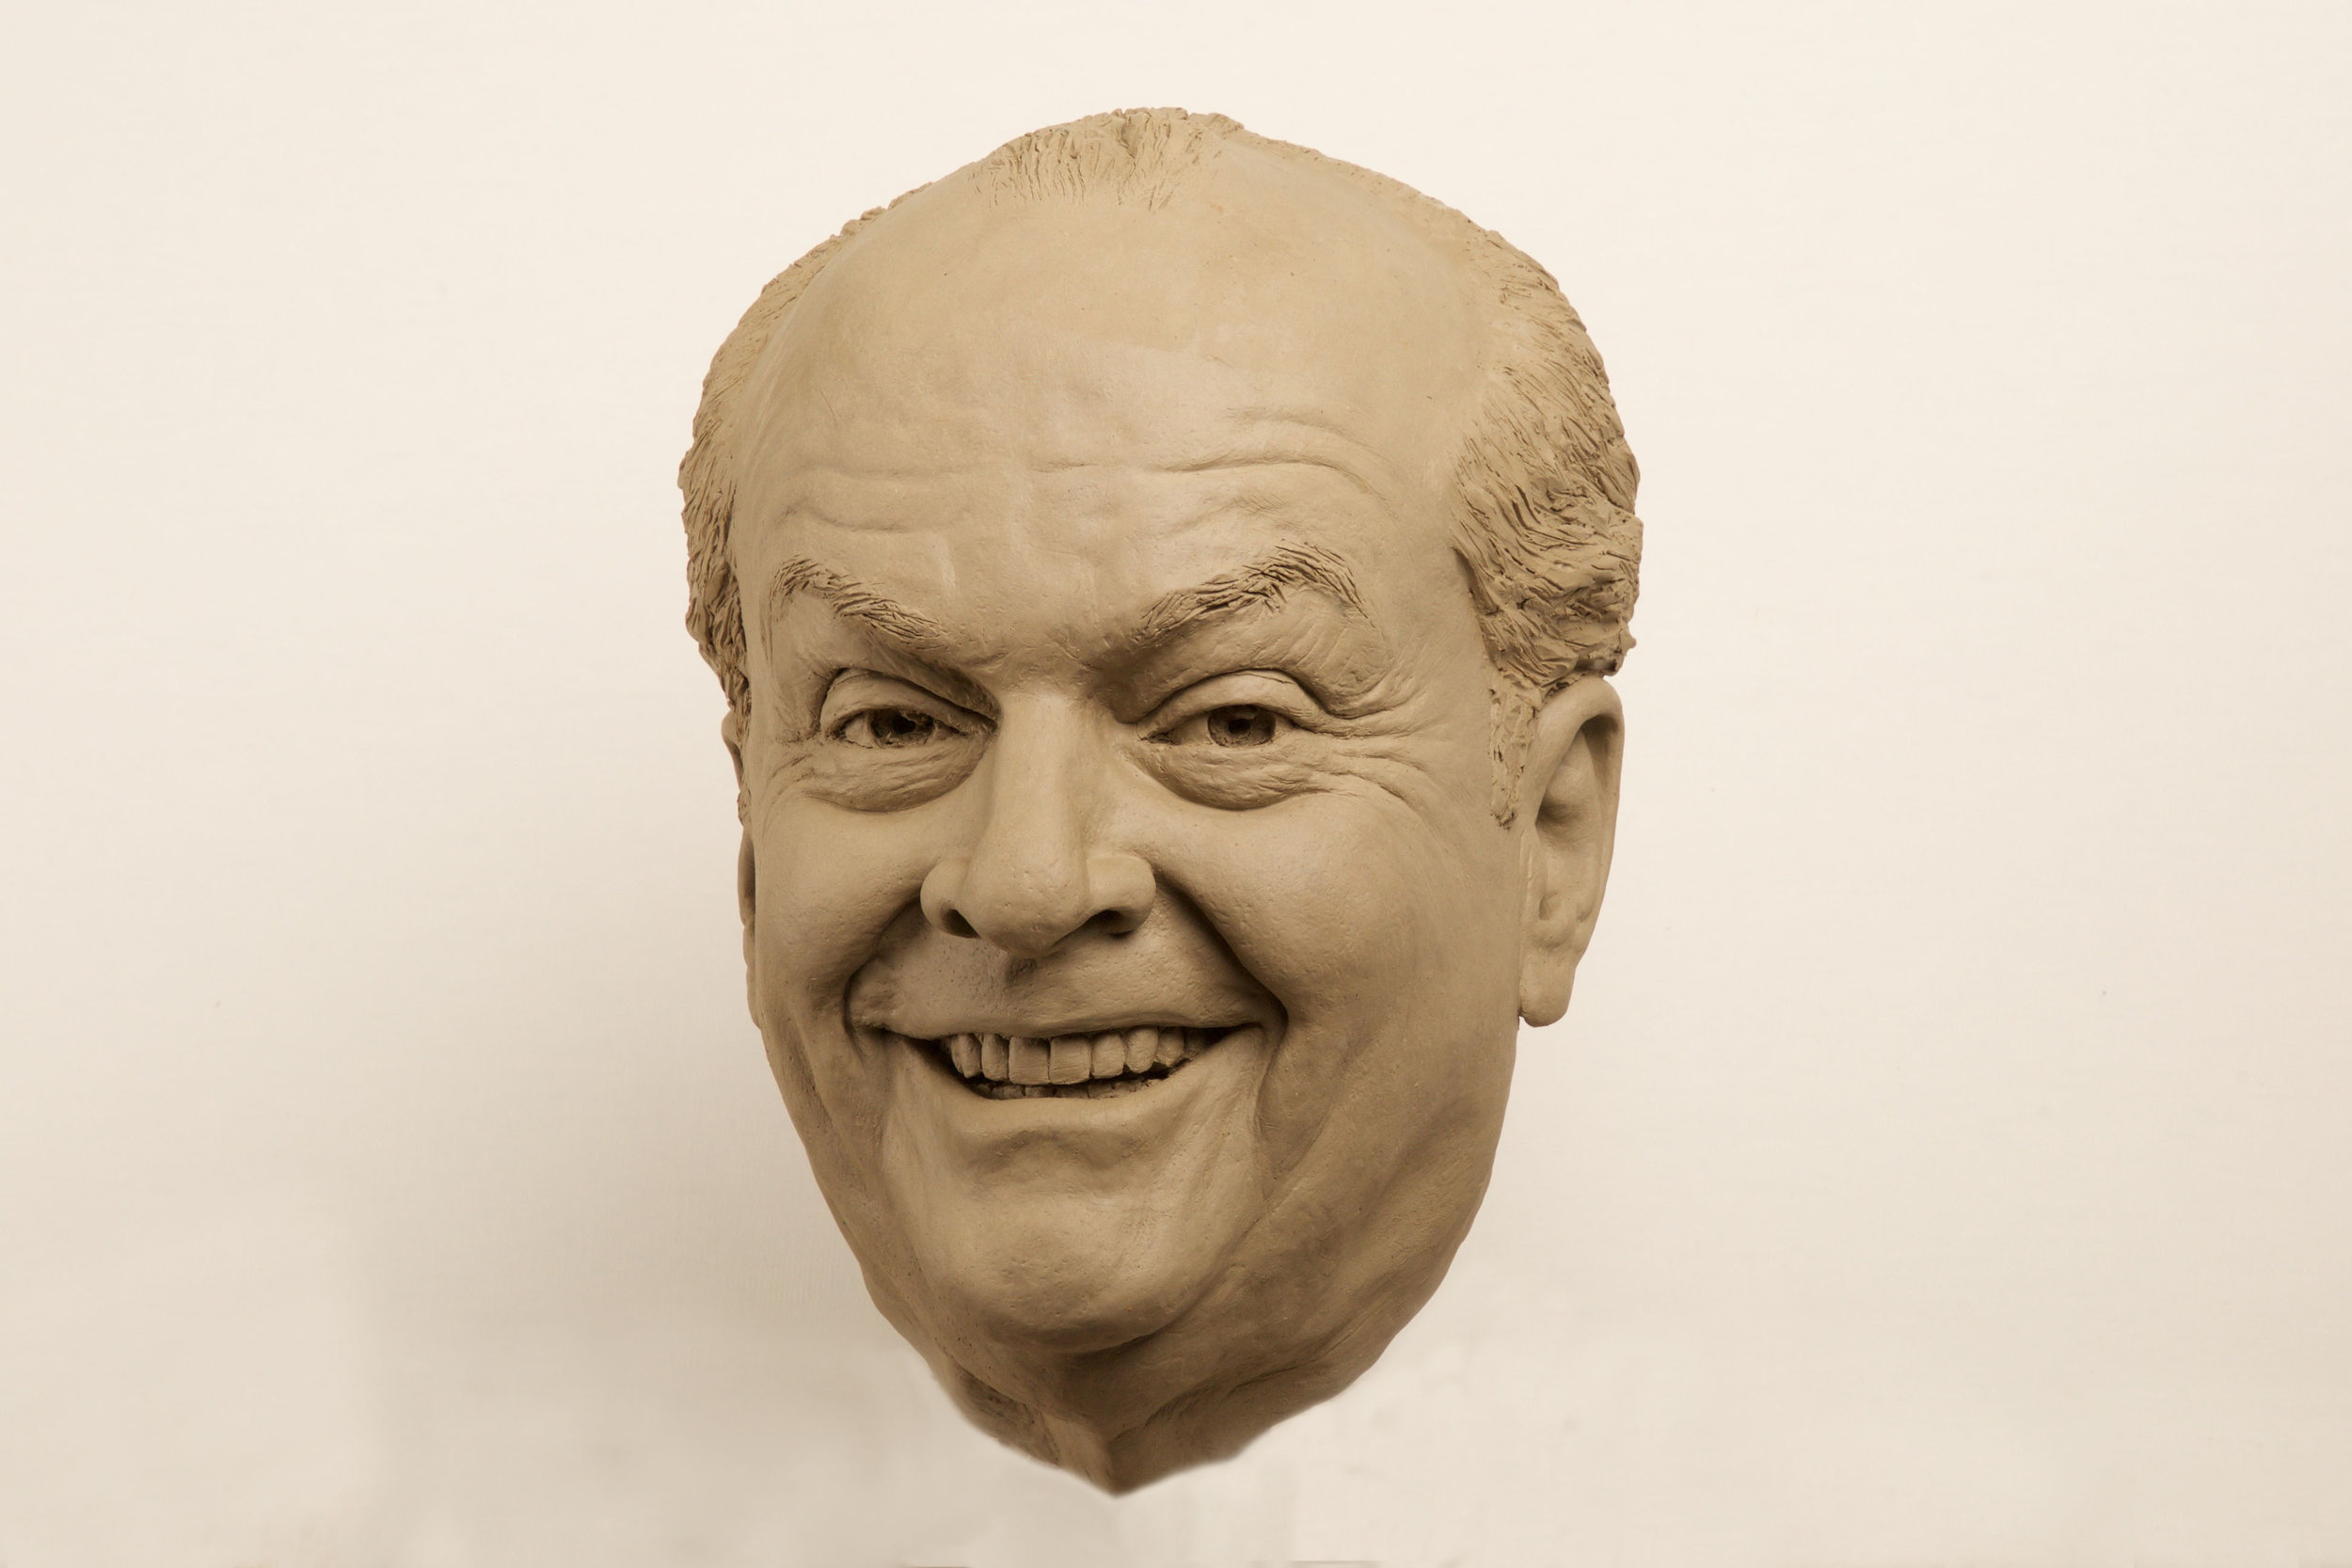 Jack Nicholson clay portrait sculpt